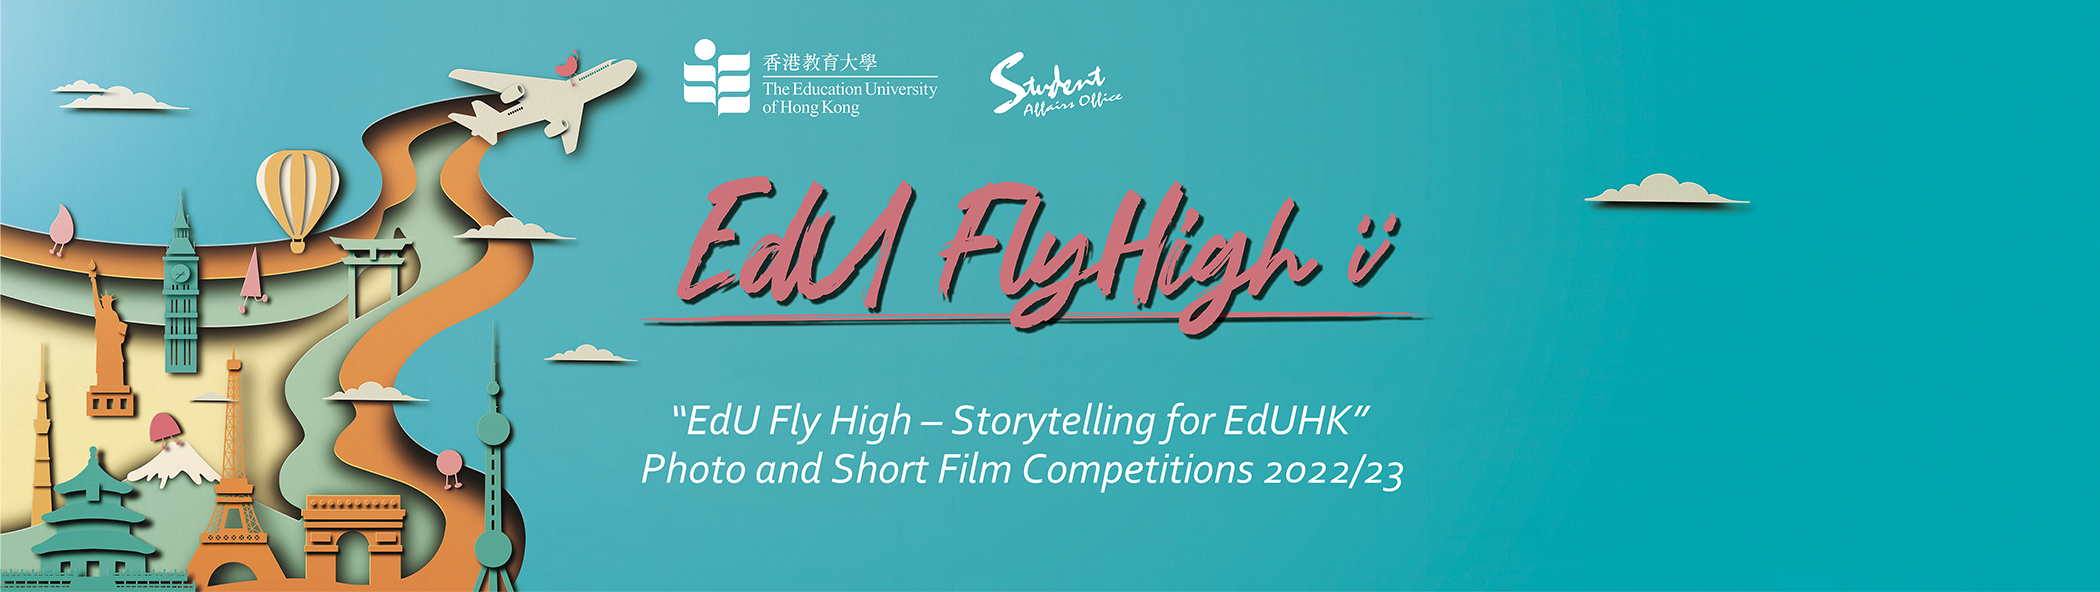 8 EdU FLY High